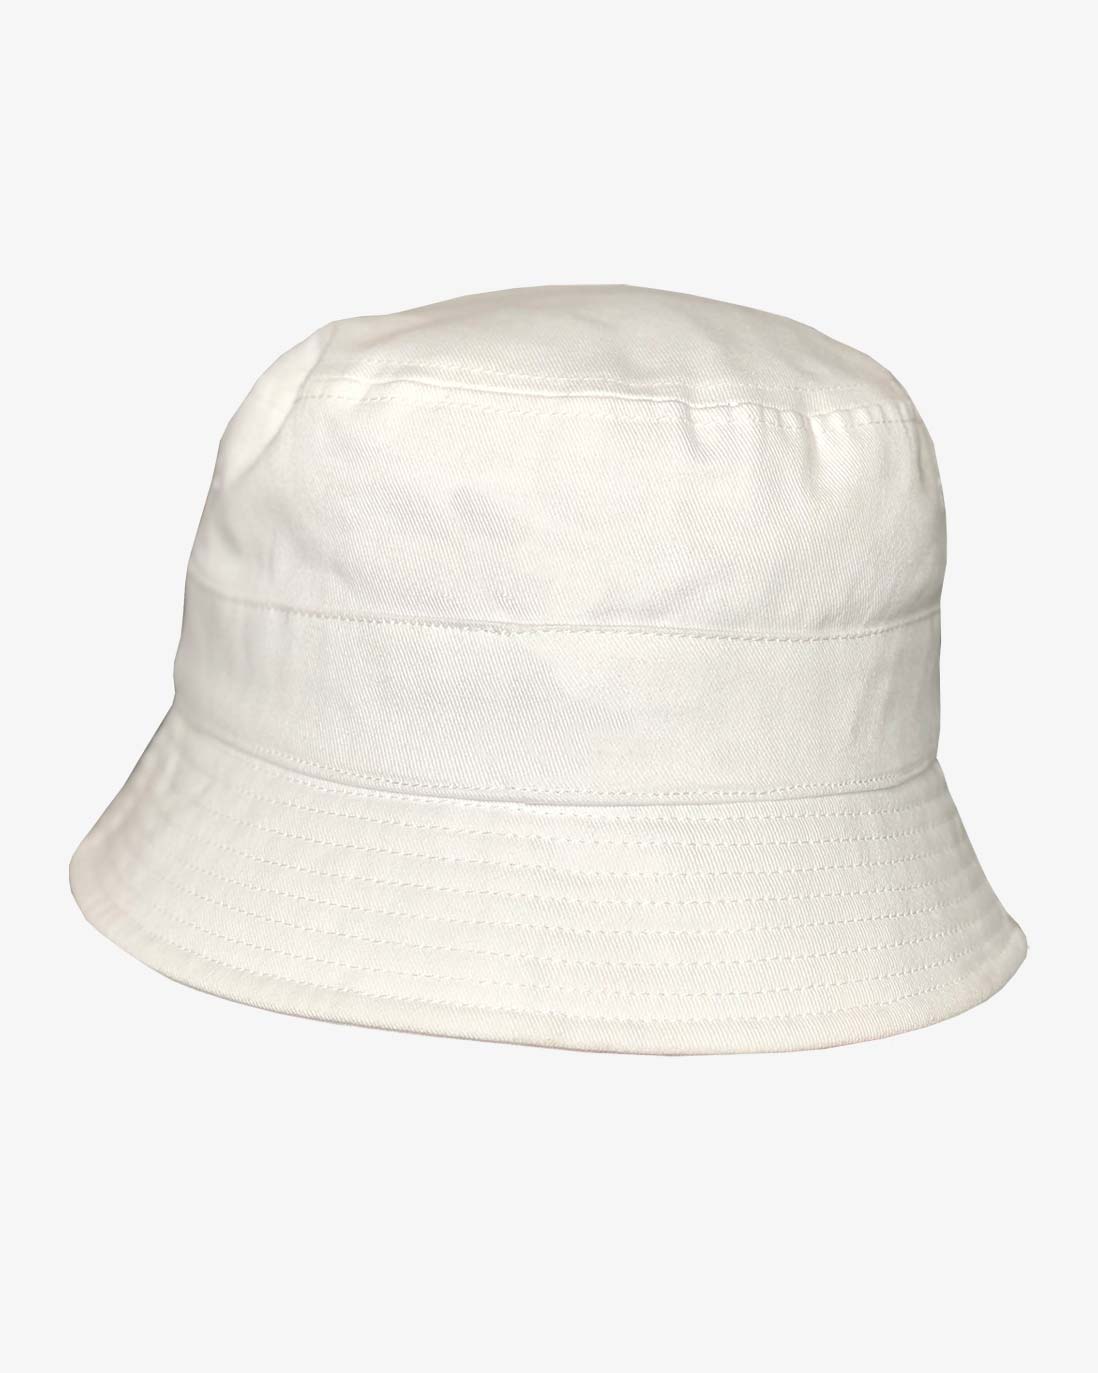 Bucket Hat in White | Trooper America Hat